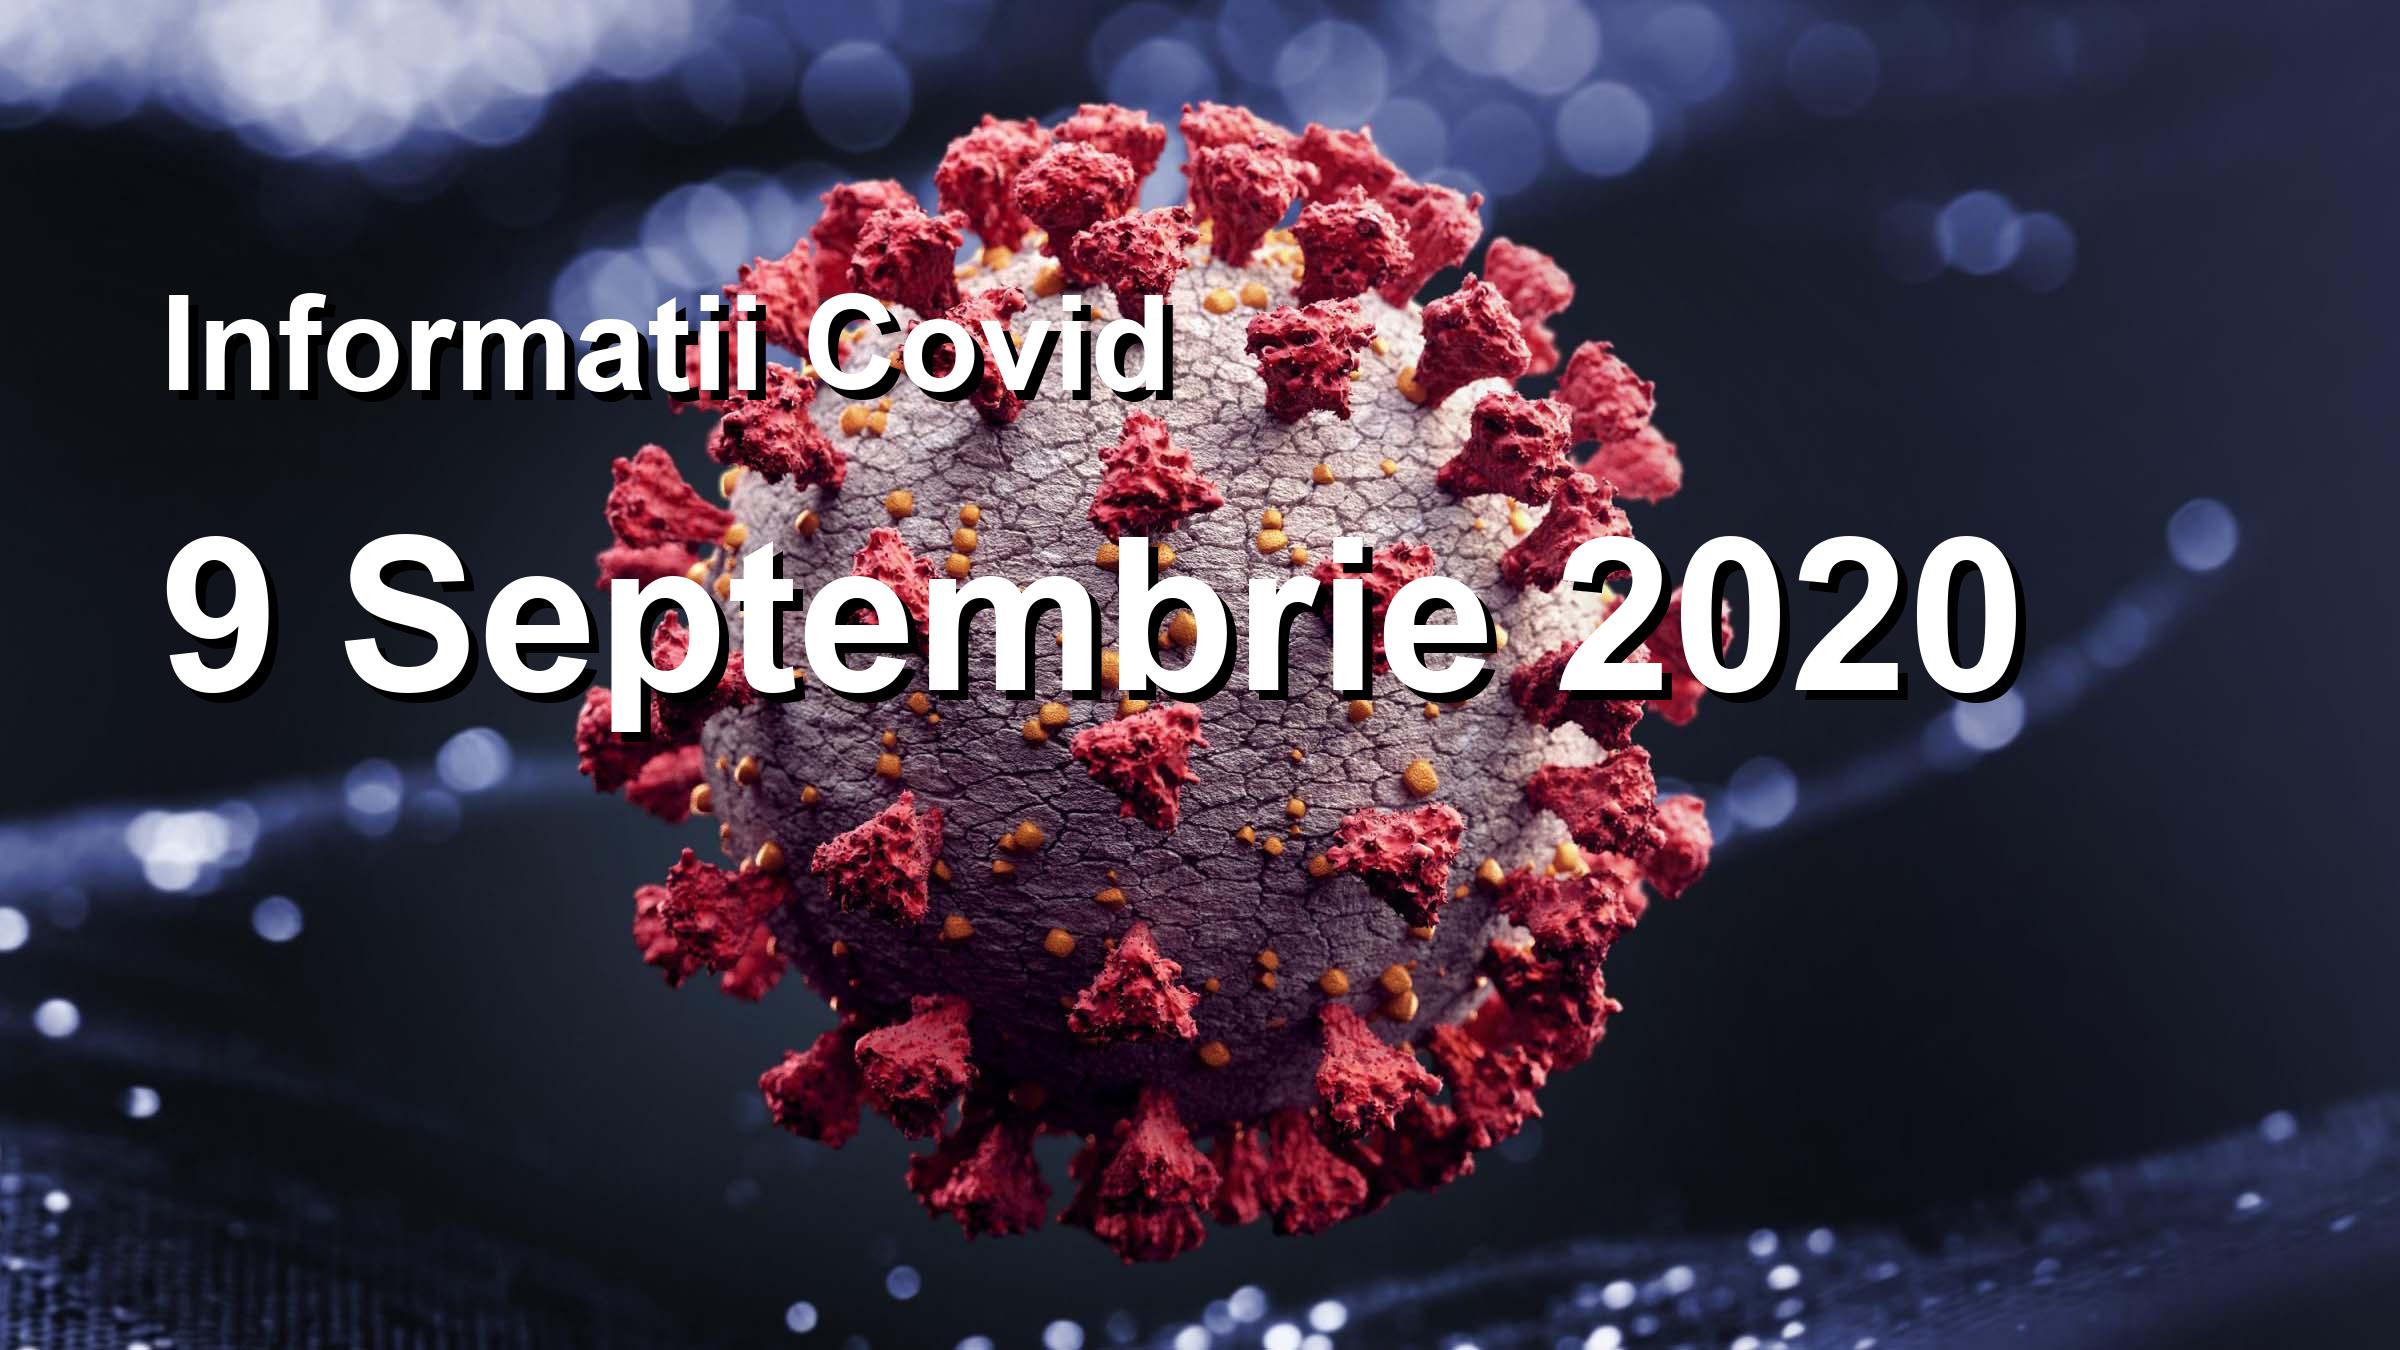 Informatii Covid-19 pentru 9 Septembrie 2020: 1271 infectari, 24297 teste. | Coronavirus Romania